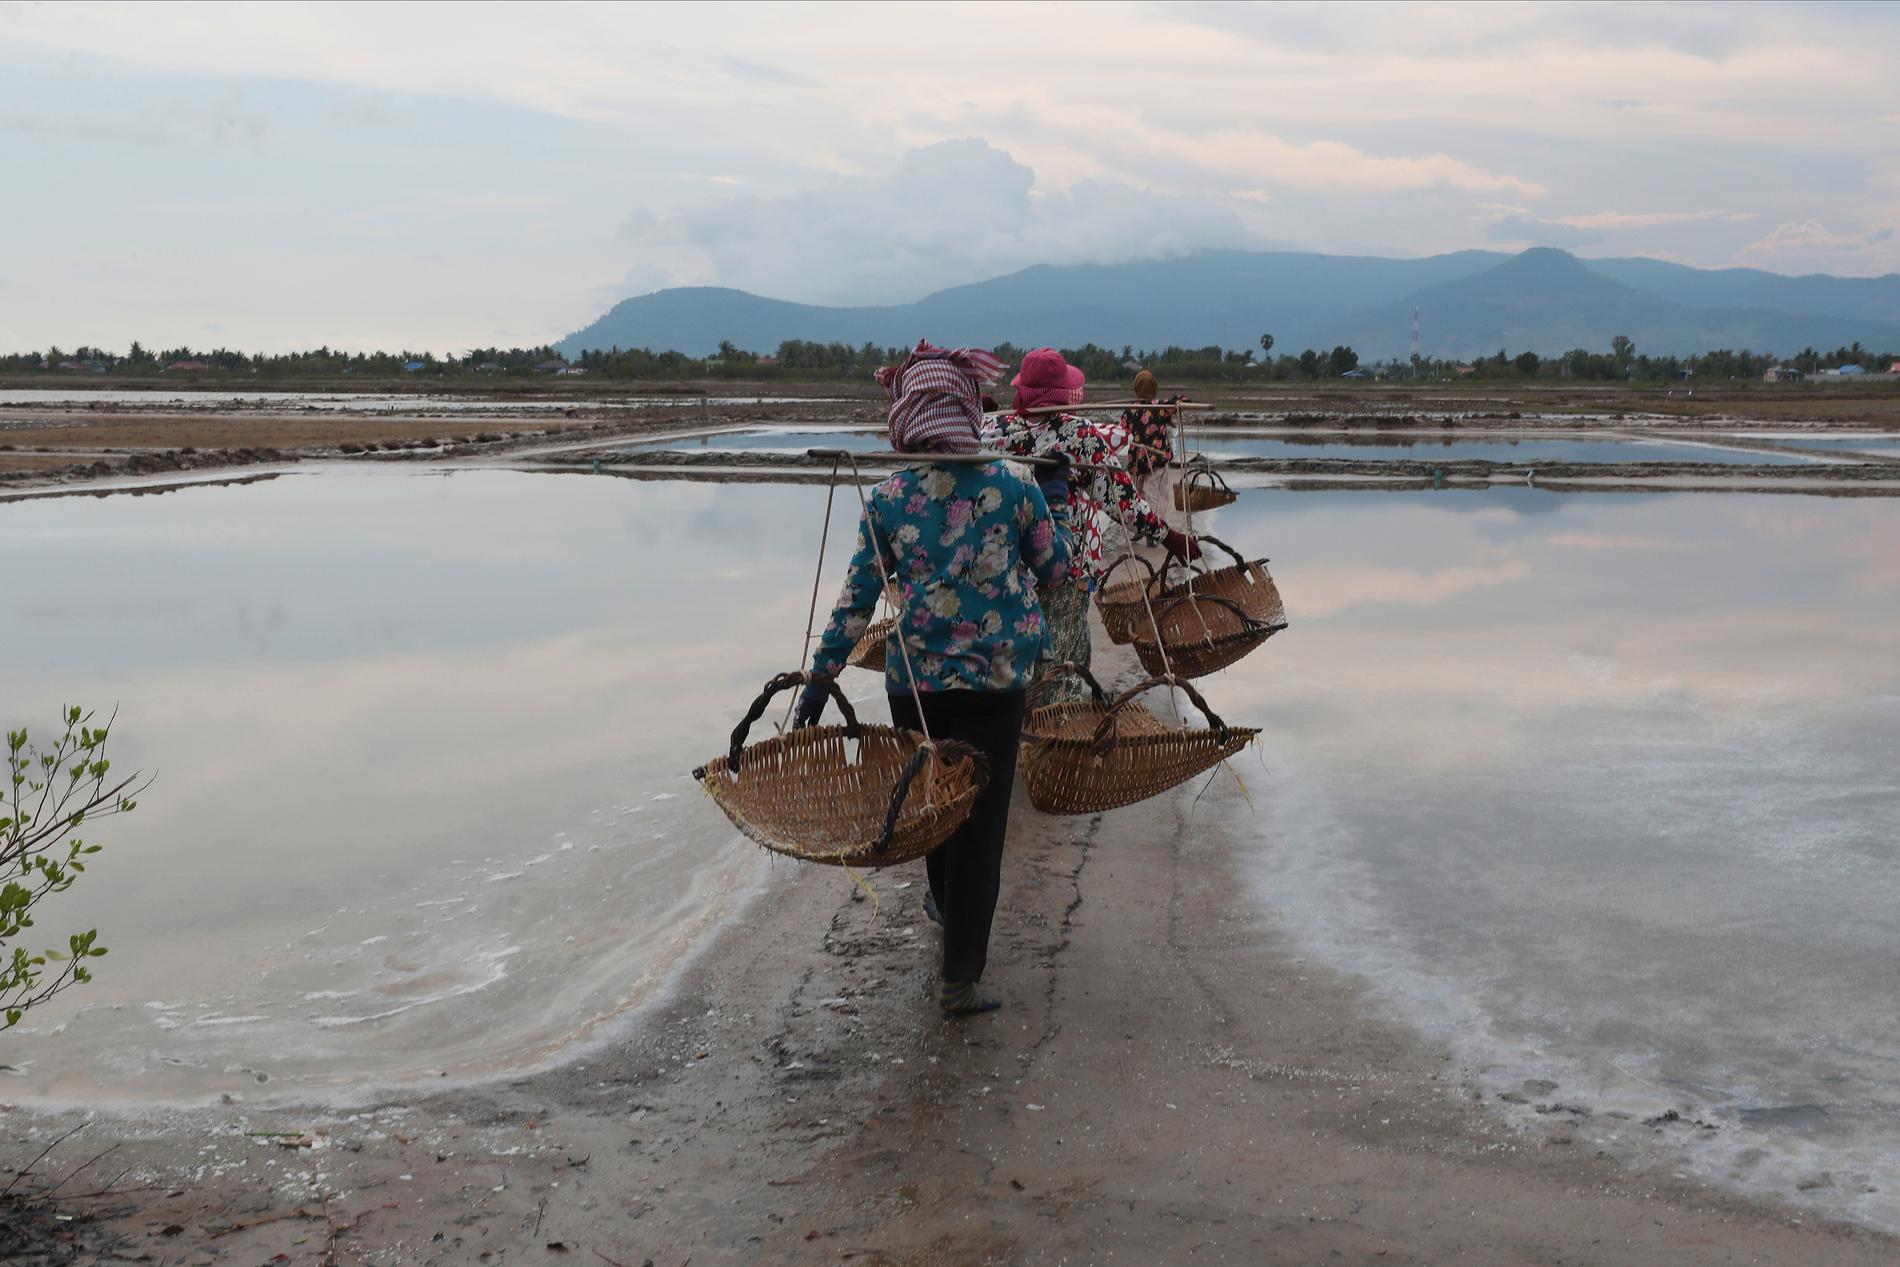 Våtmarkerna söder om Phnom Penh ger levebröd åt fler än 1 000 familjer som lever, fiskar och brukar mark i området.